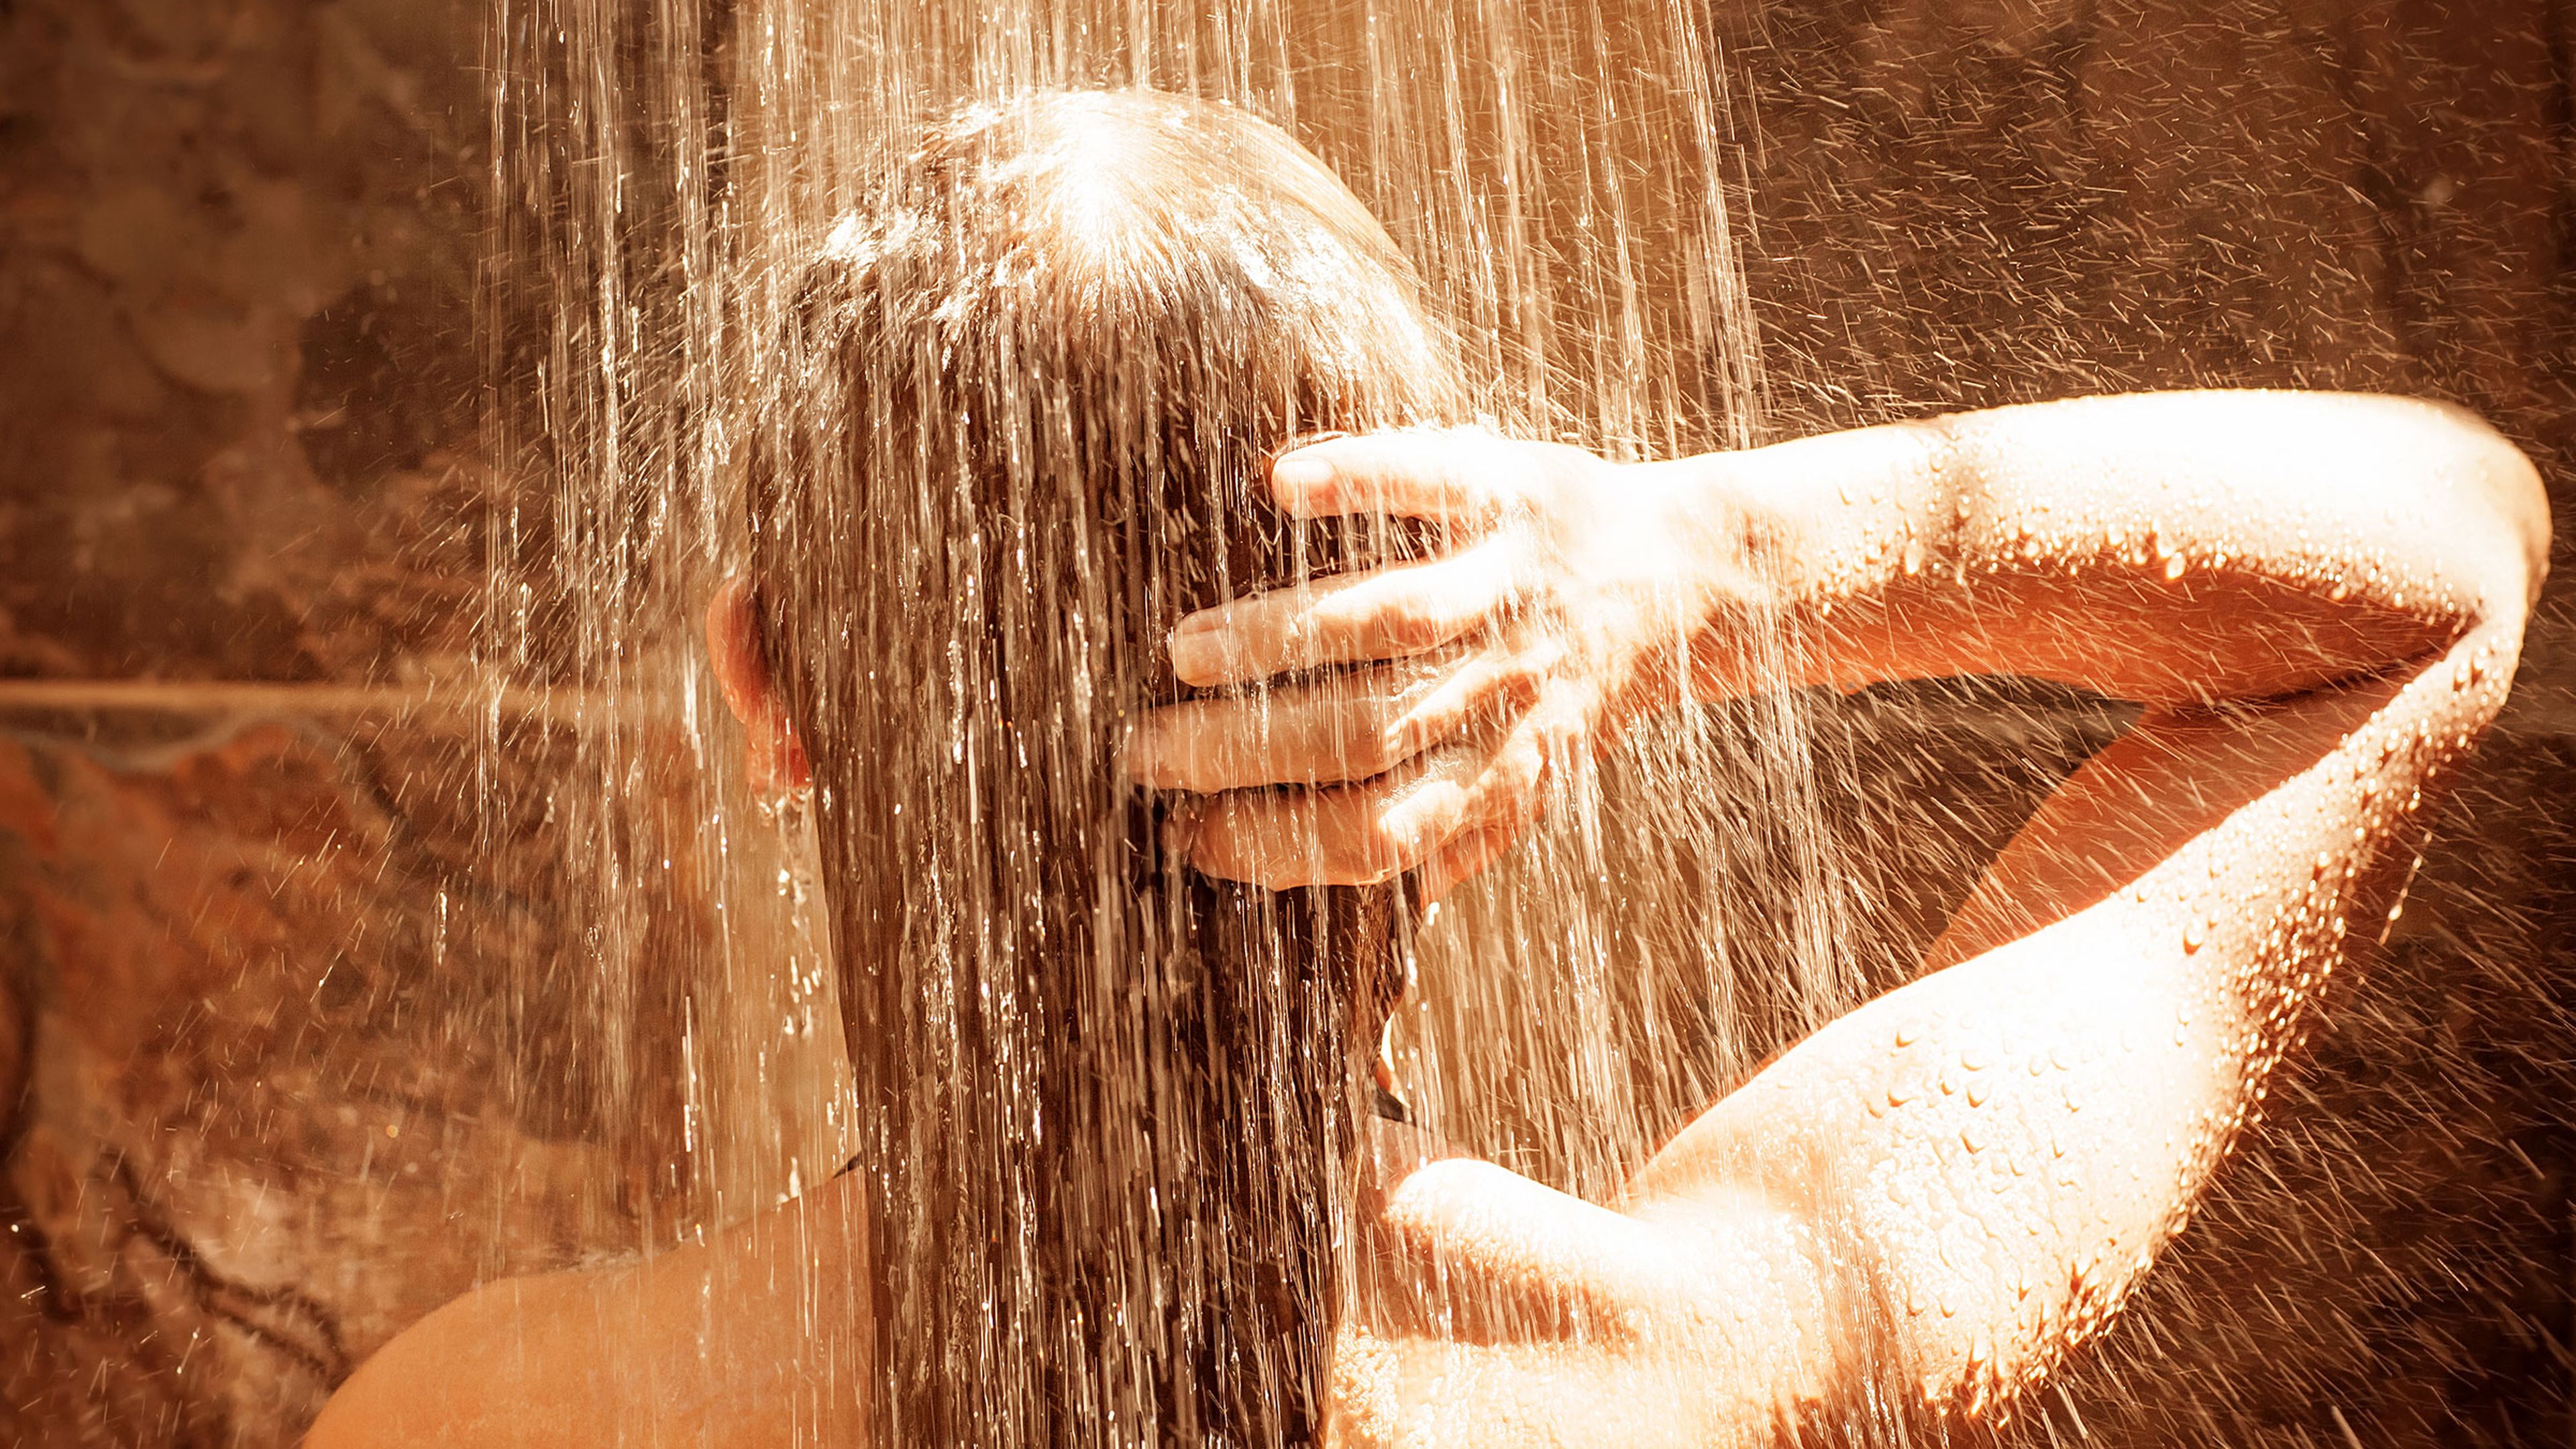 Mujer tomando una ducha